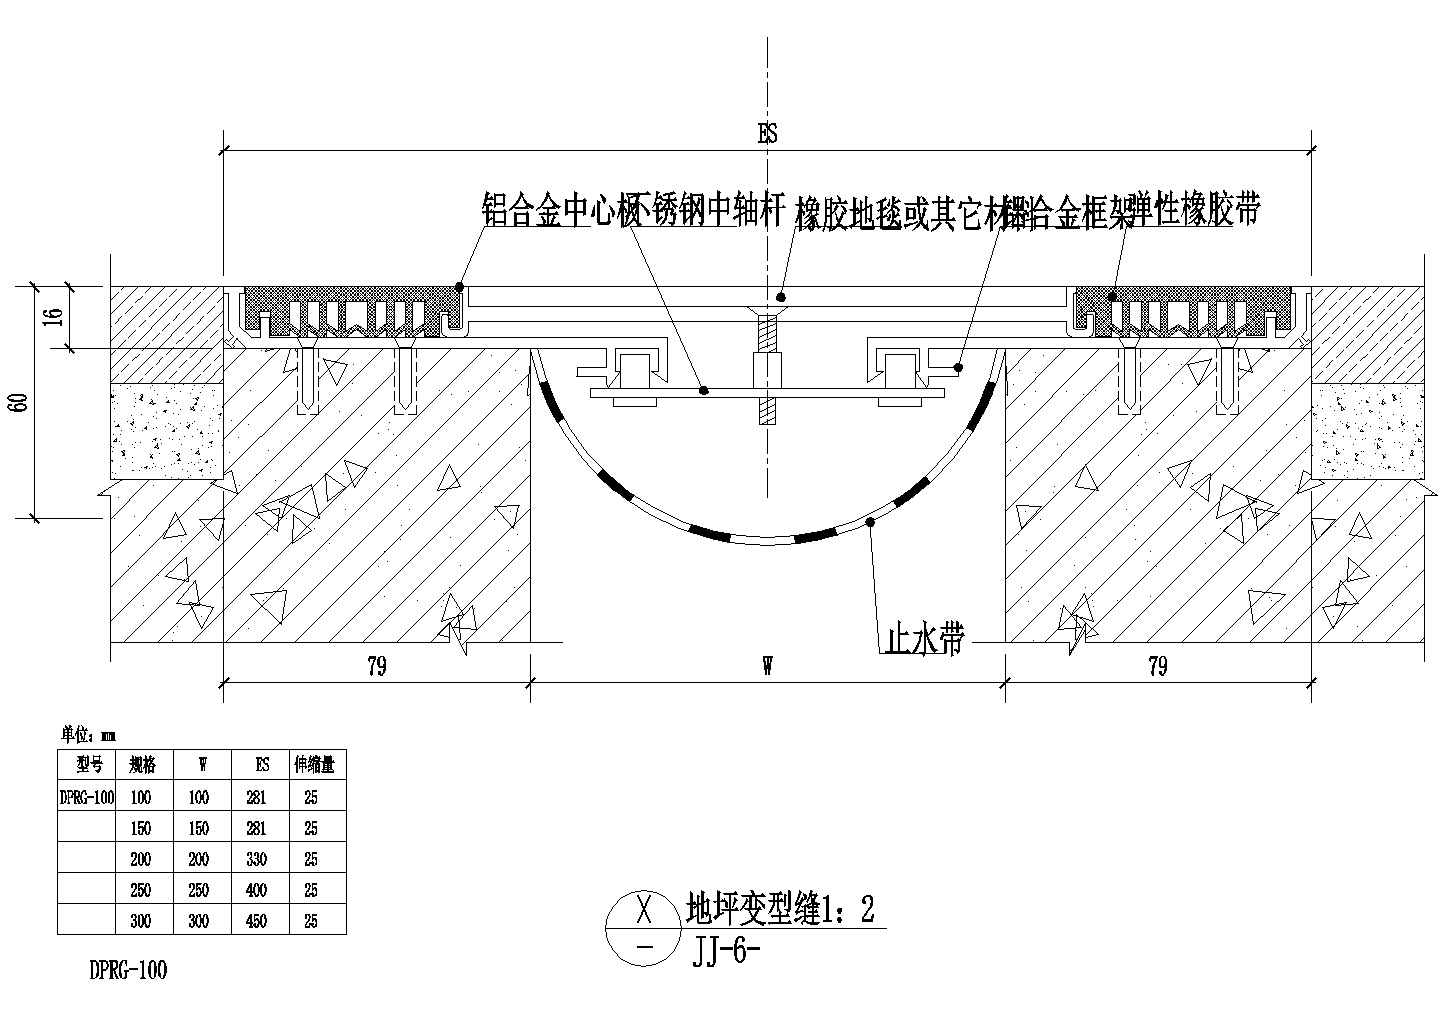 上海崇明岛某度假村内部住宅楼地坪变形缝建筑设计CAD施工图